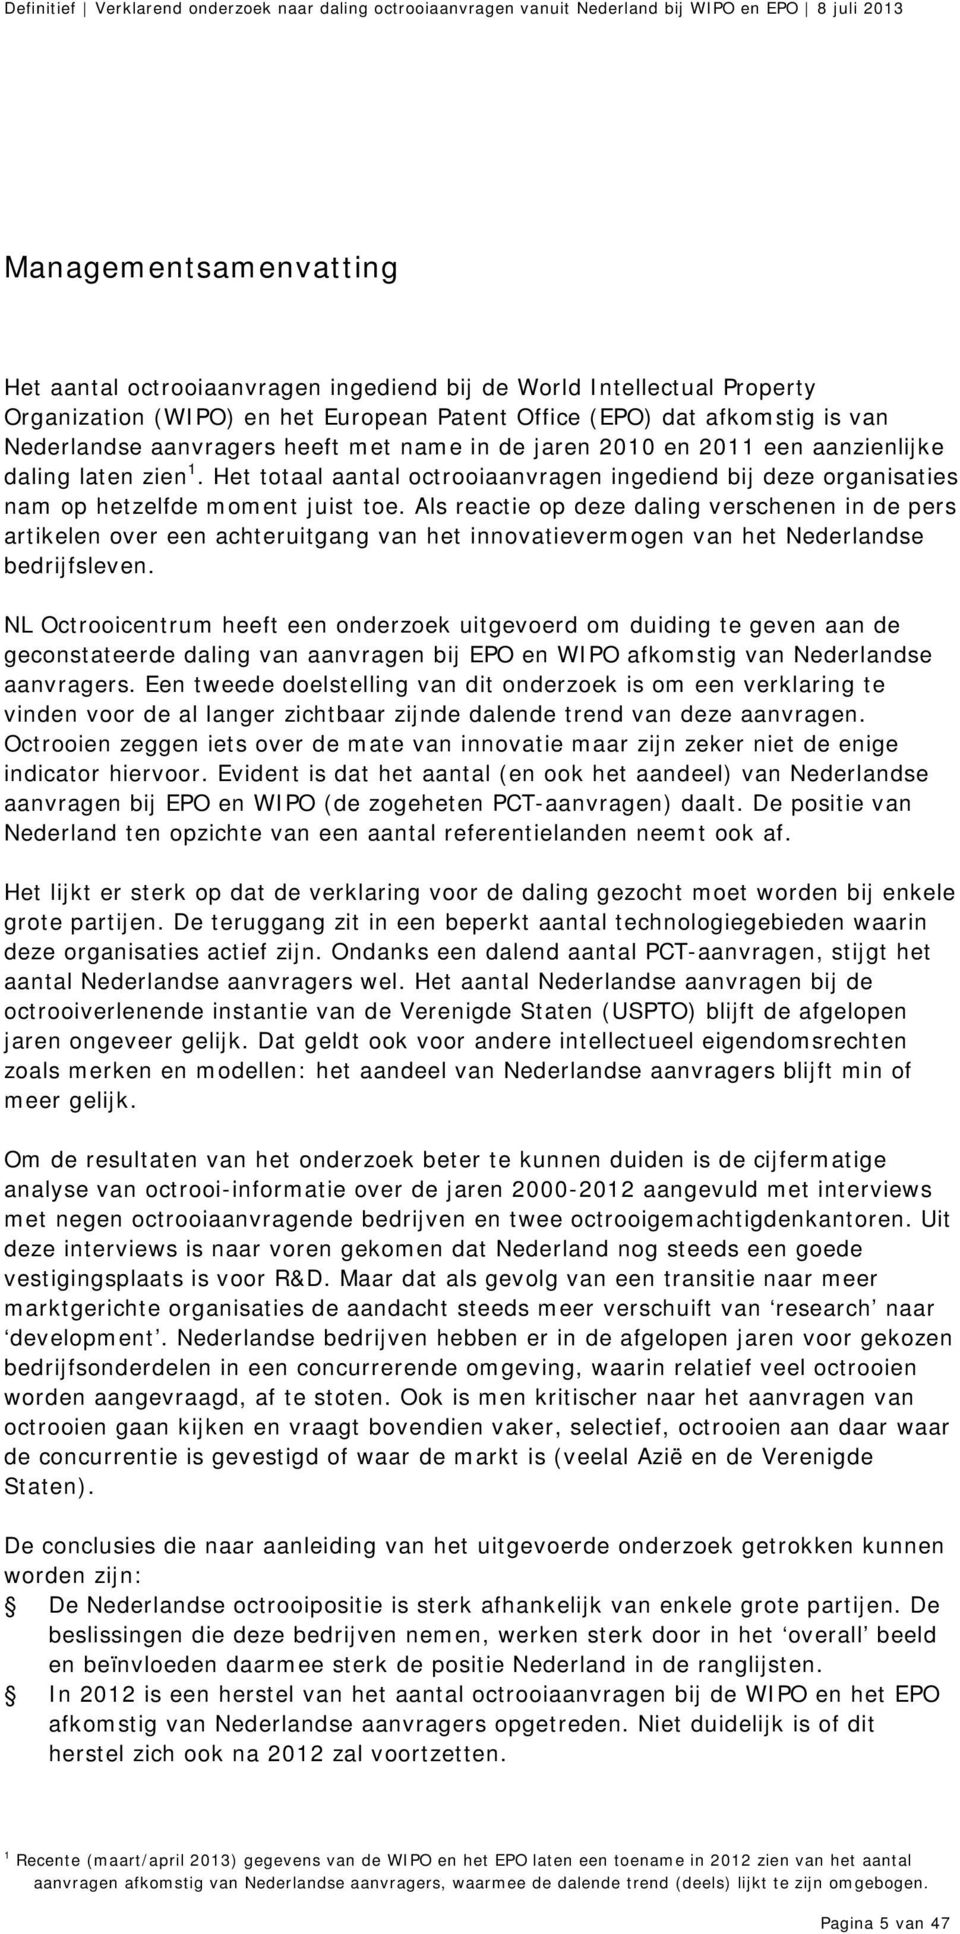 Als reactie op deze daling verschenen in de pers artikelen over een achteruitgang van het innovatievermogen van het Nederlandse bedrijfsleven.